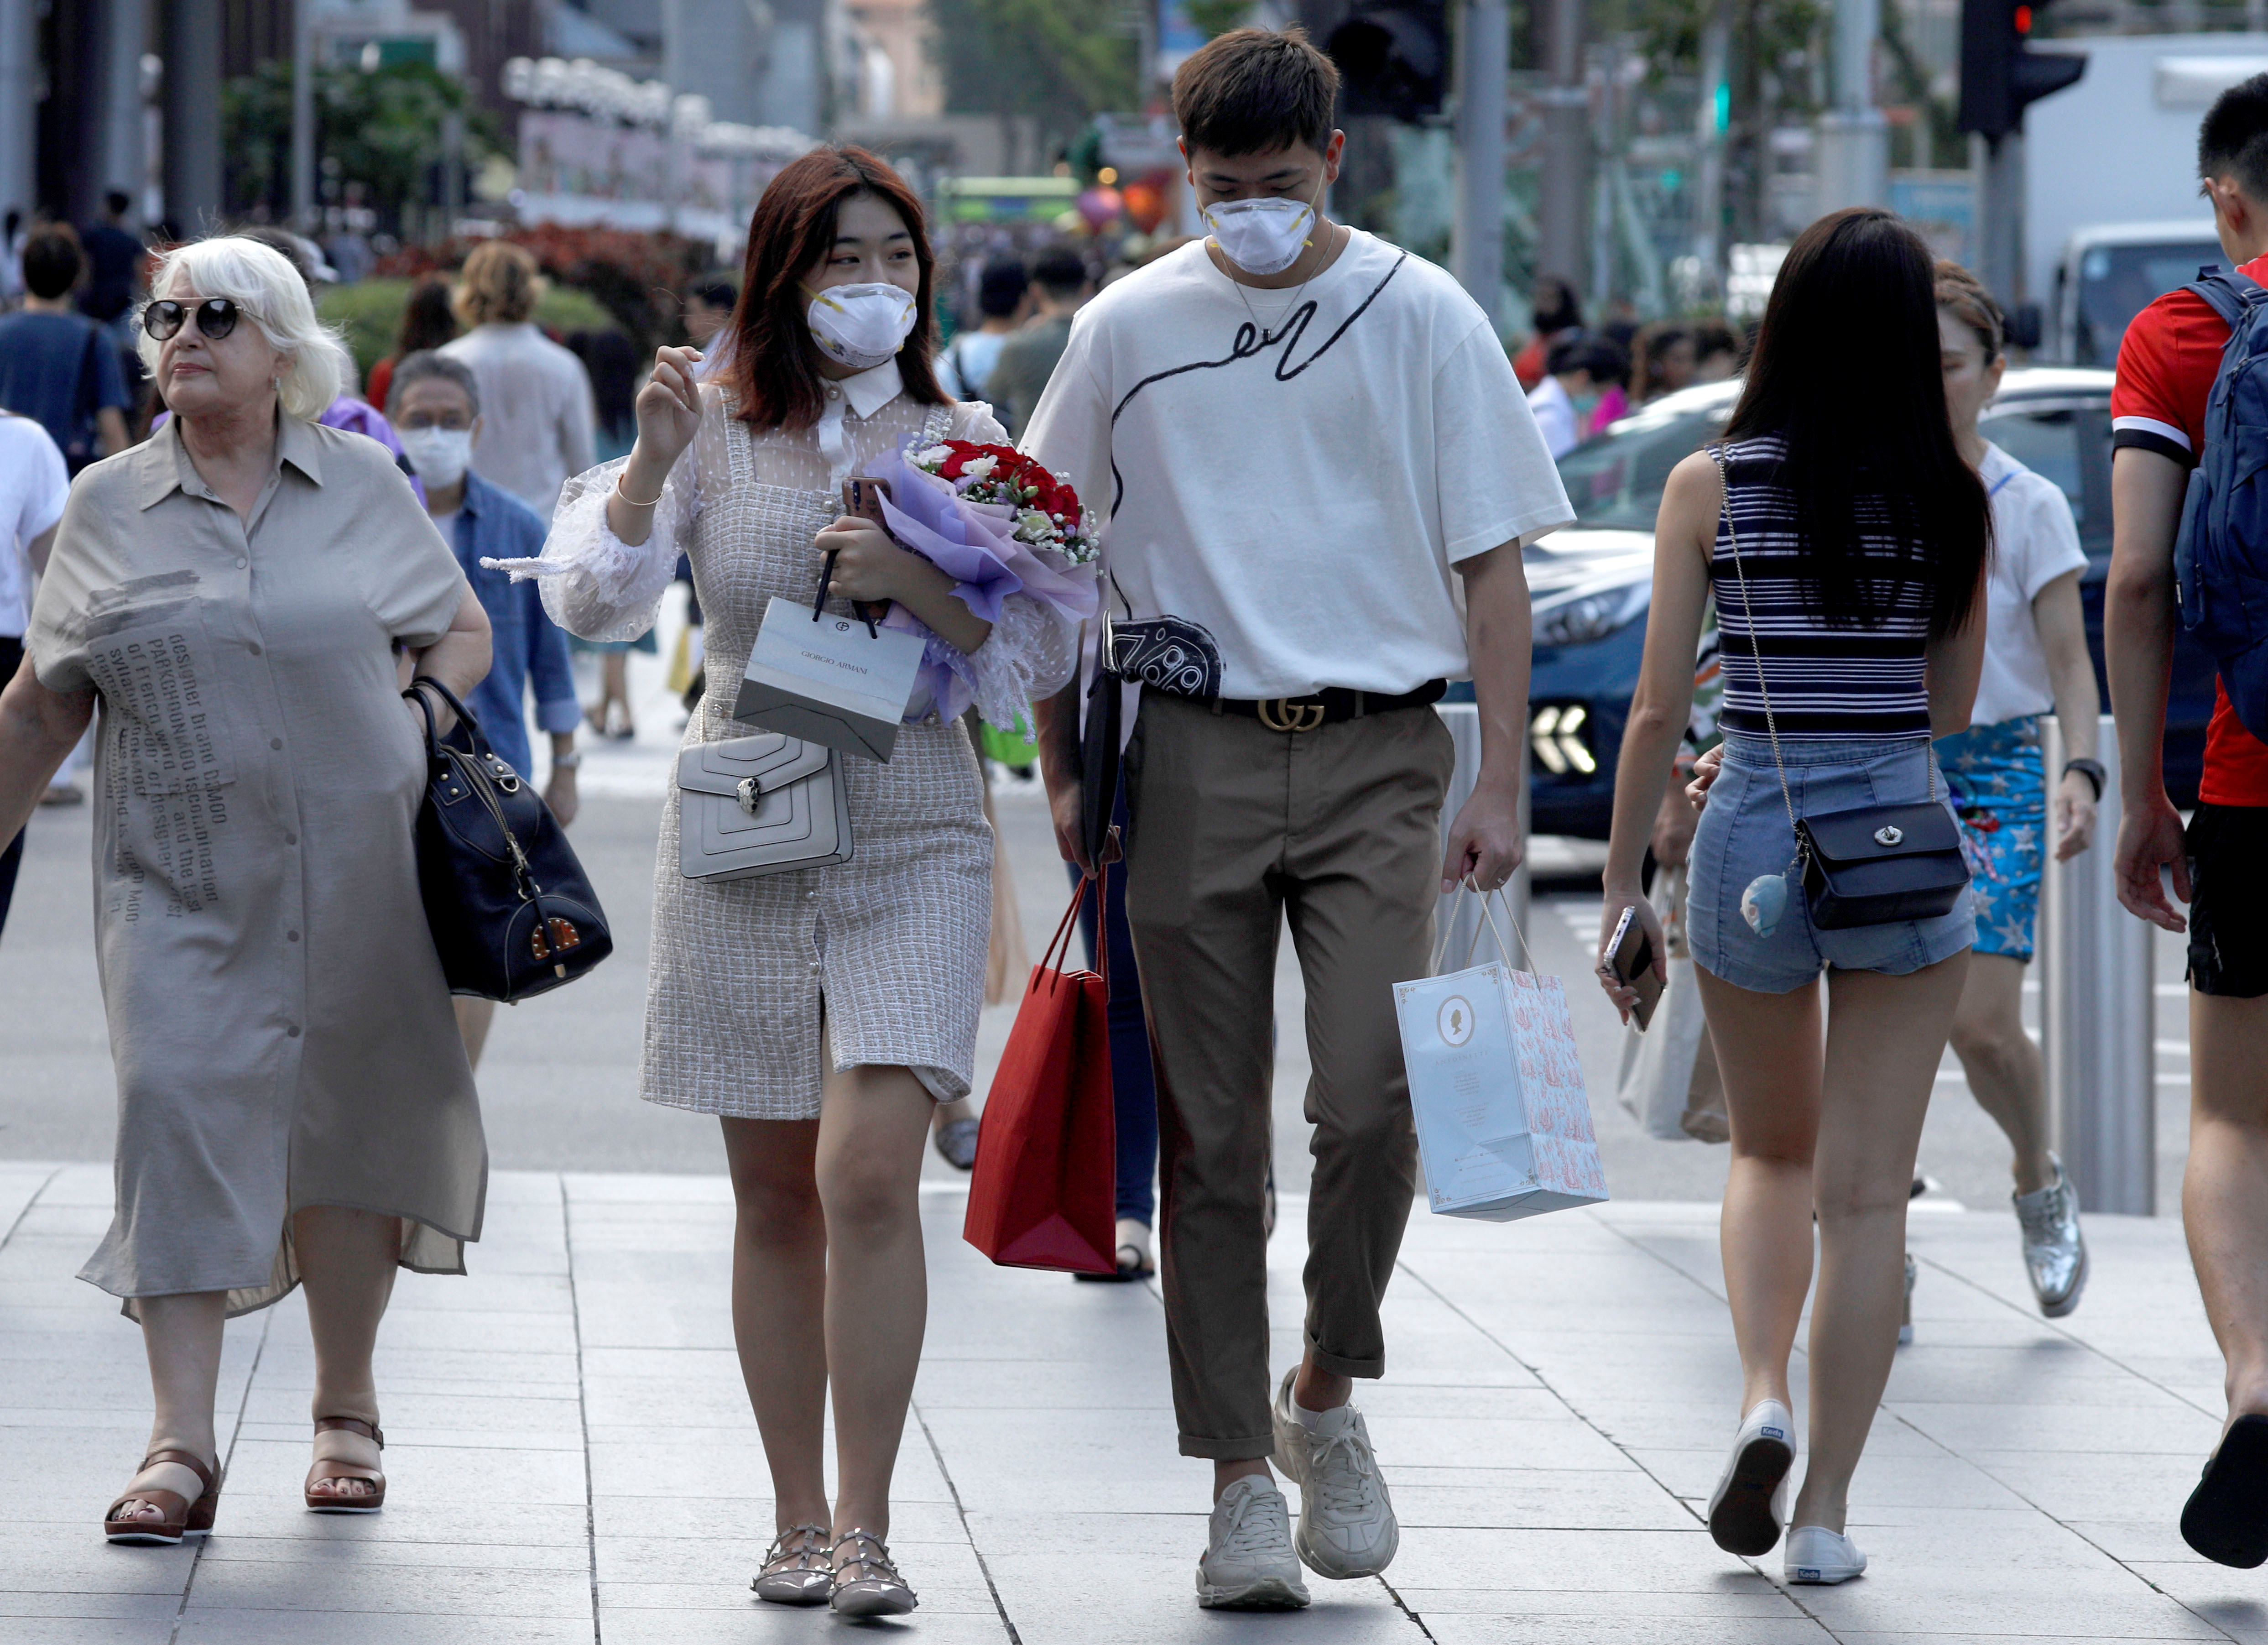 Singapur encarcelará a quienes incumplan la distancia establecida contra pandemia